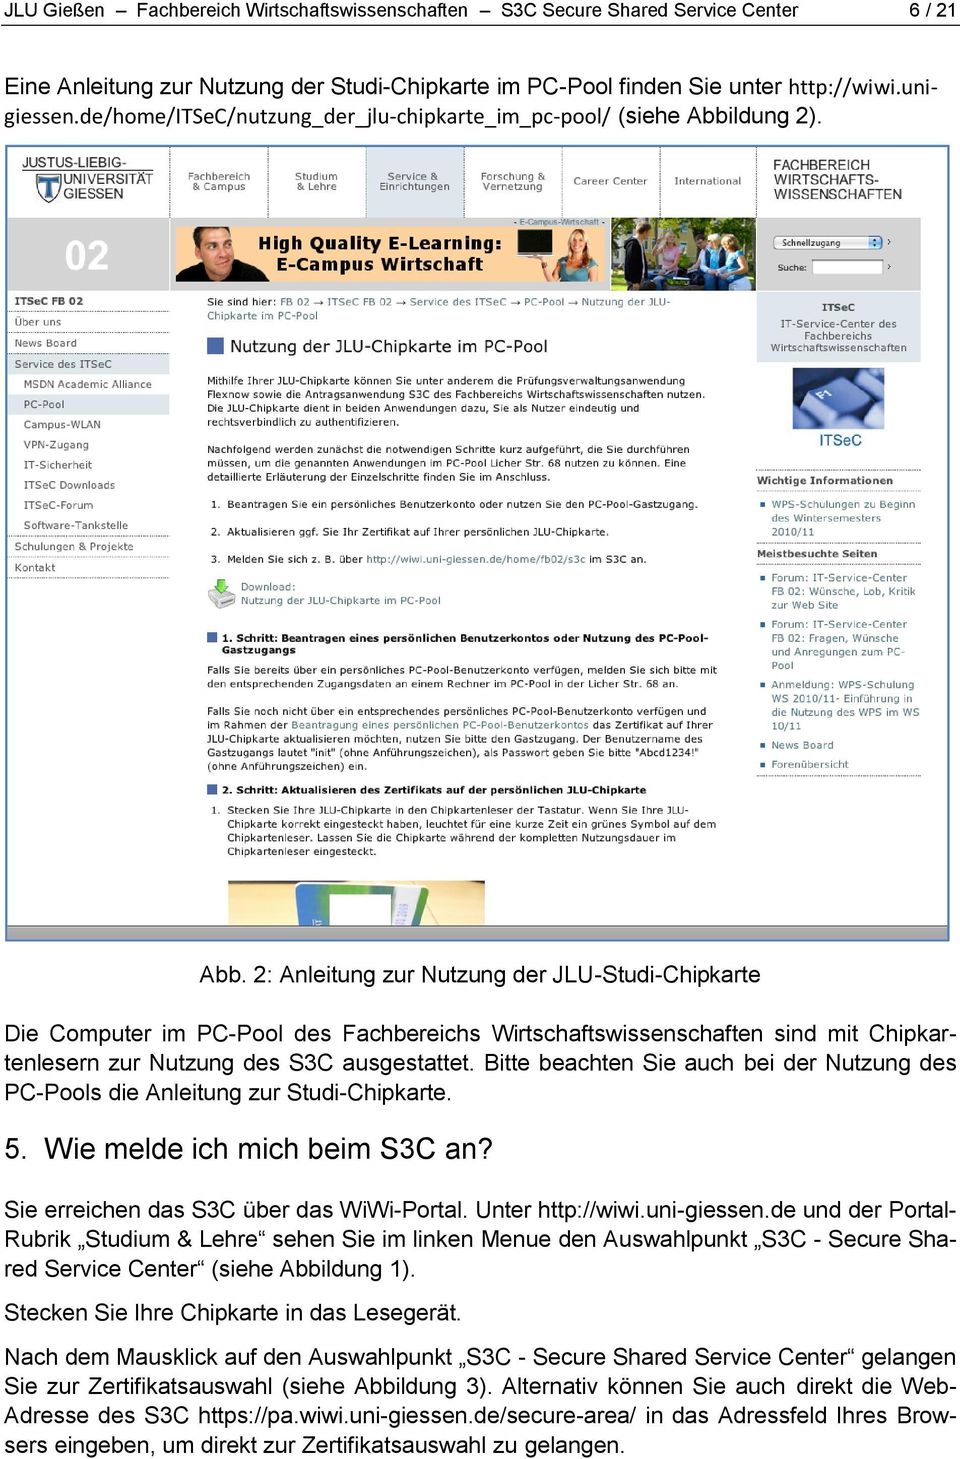 ldung 2). Abb. 2: Anleitung zur Nutzung der JLU-Studi-Chipkarte Die Computer im PC-Pool des Fachbereichs Wirtschaftswissenschaften sind mit Chipkartenlesern zur Nutzung des S3C ausgestattet.